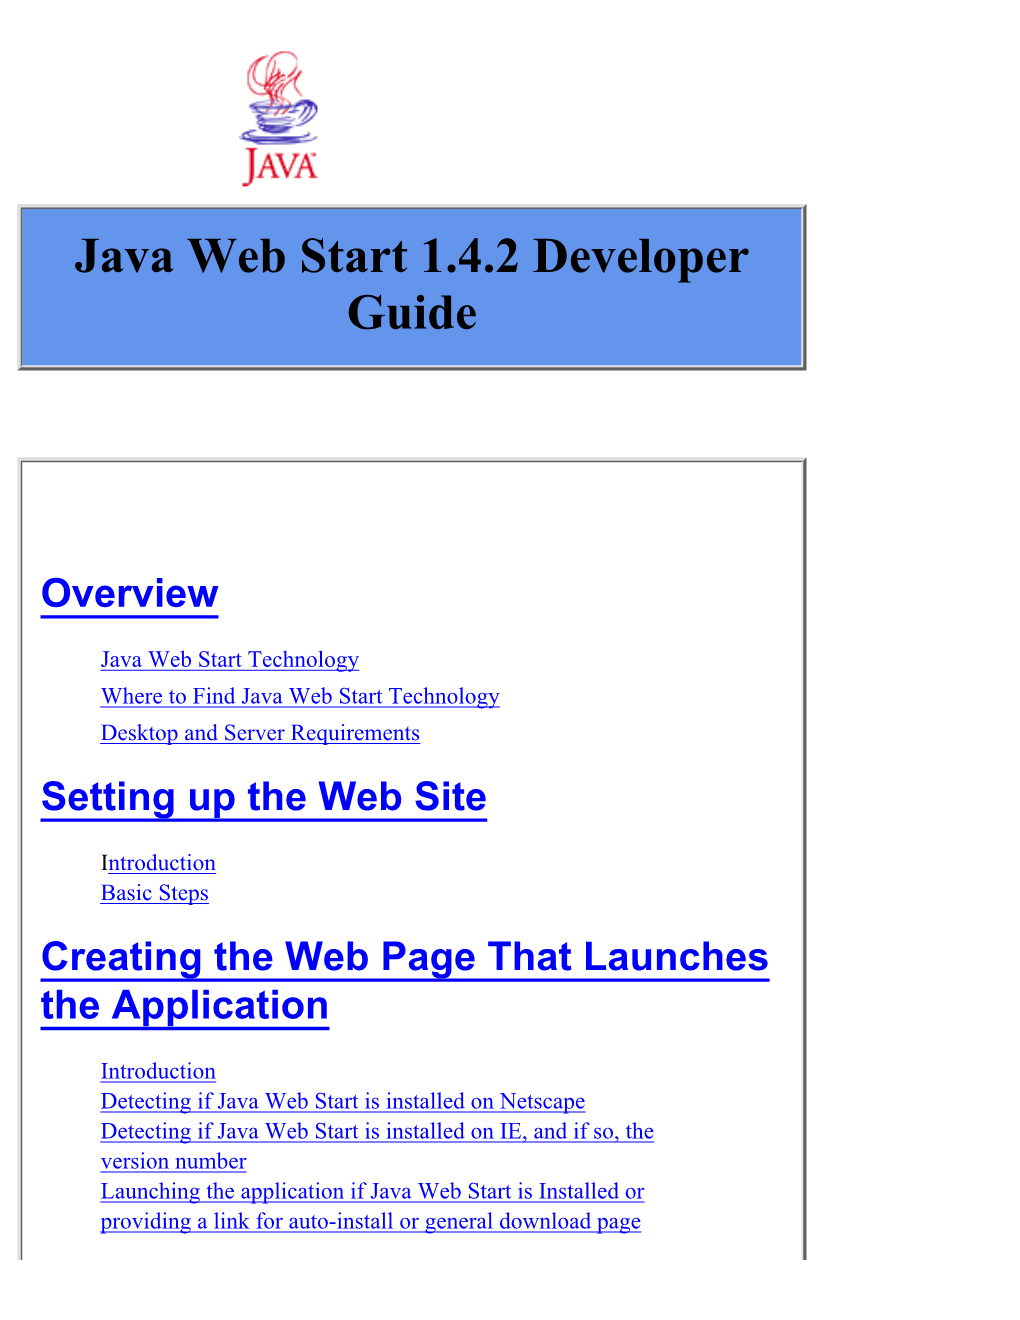 Java Web Start 1.4.2 Developer Guide